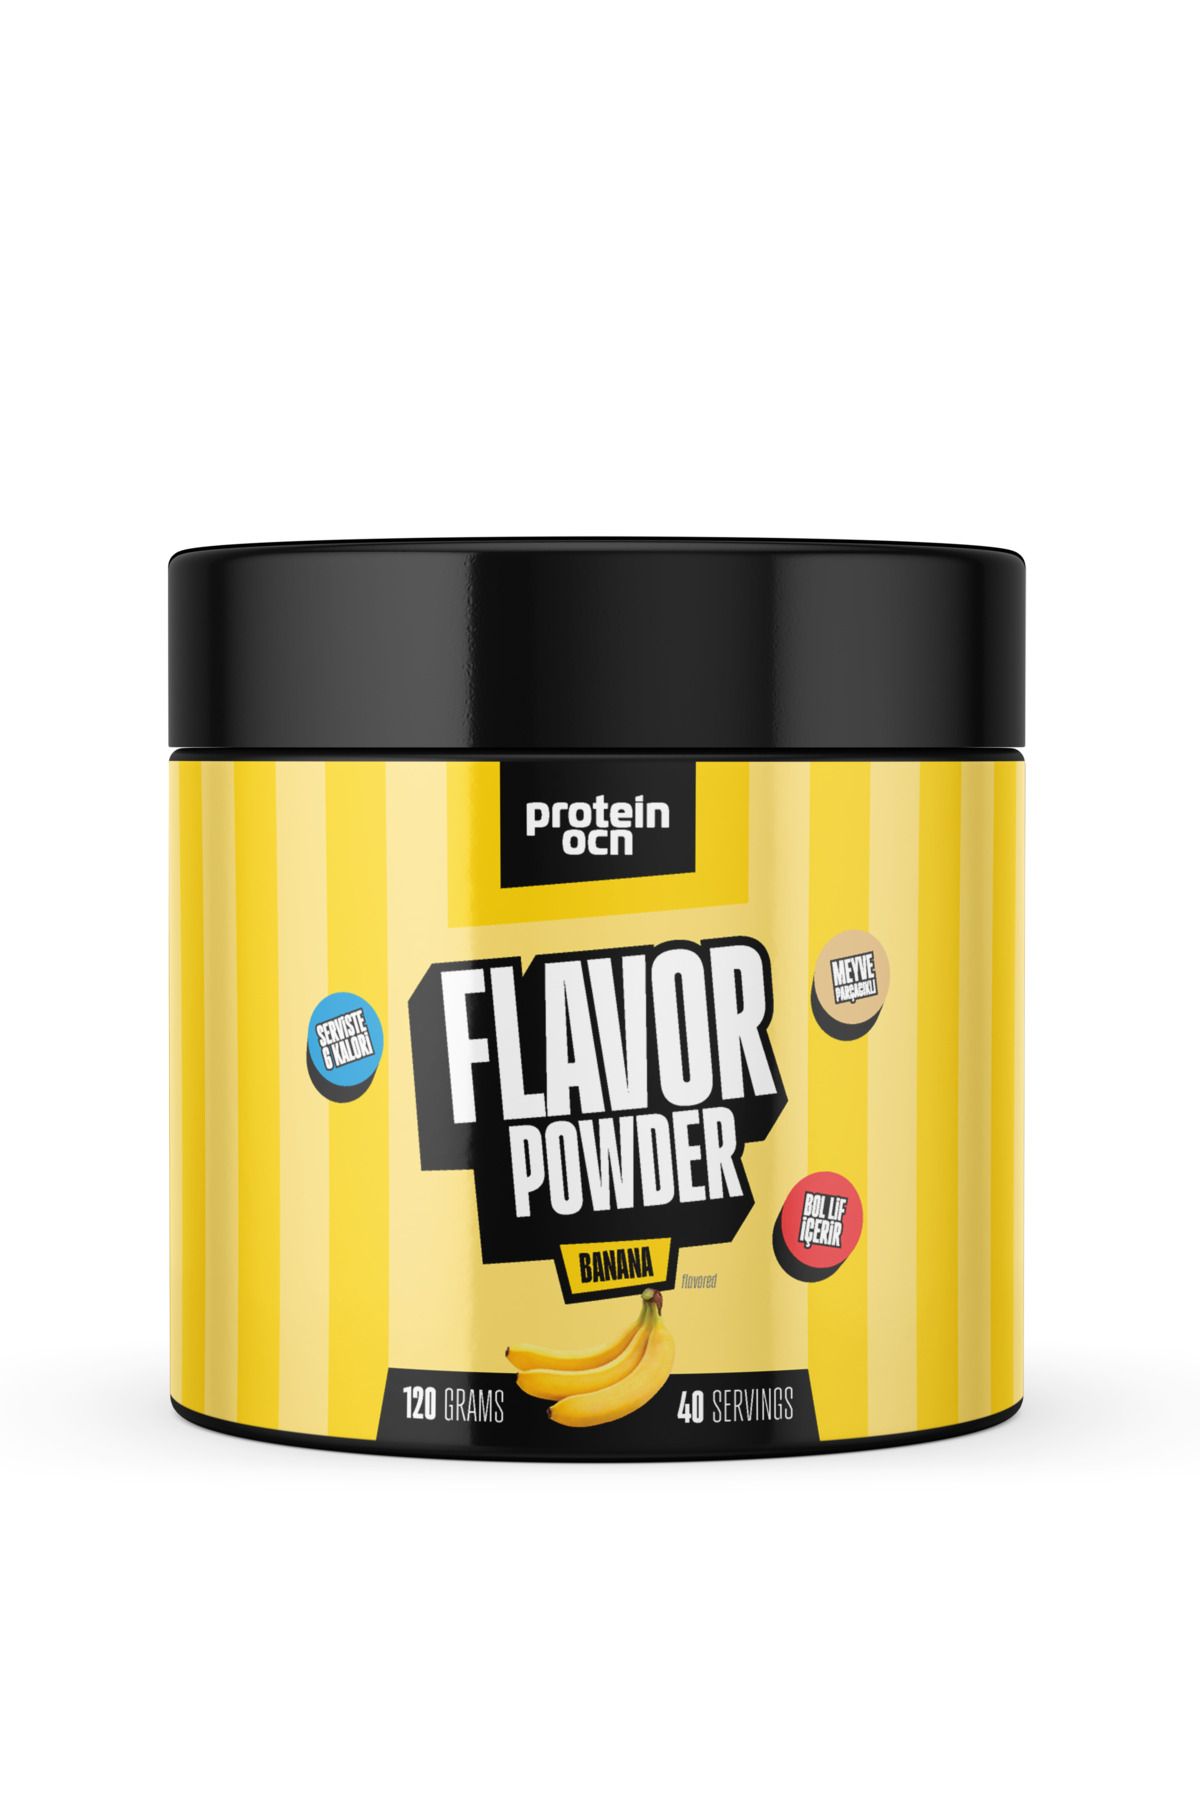 Proteinocean Flavor Powder - Muz - 120g - 40 servis